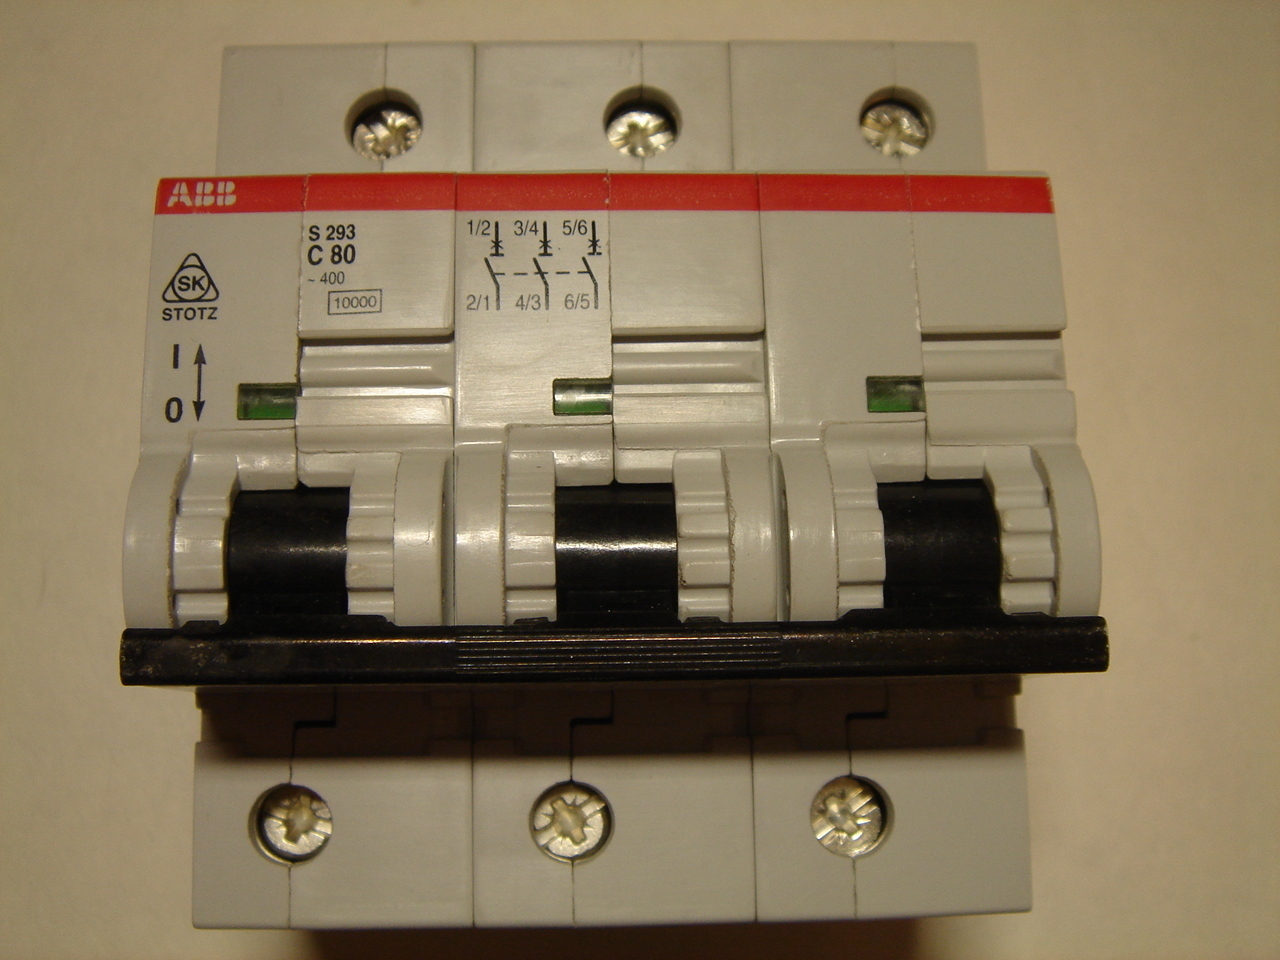 Купить автоматический выключатель abb. Автомат 100 ампер 3 фазный ABB. ABB s293 80a. ABB s293 c80. Автомат на 630 ампер 3 фазный.